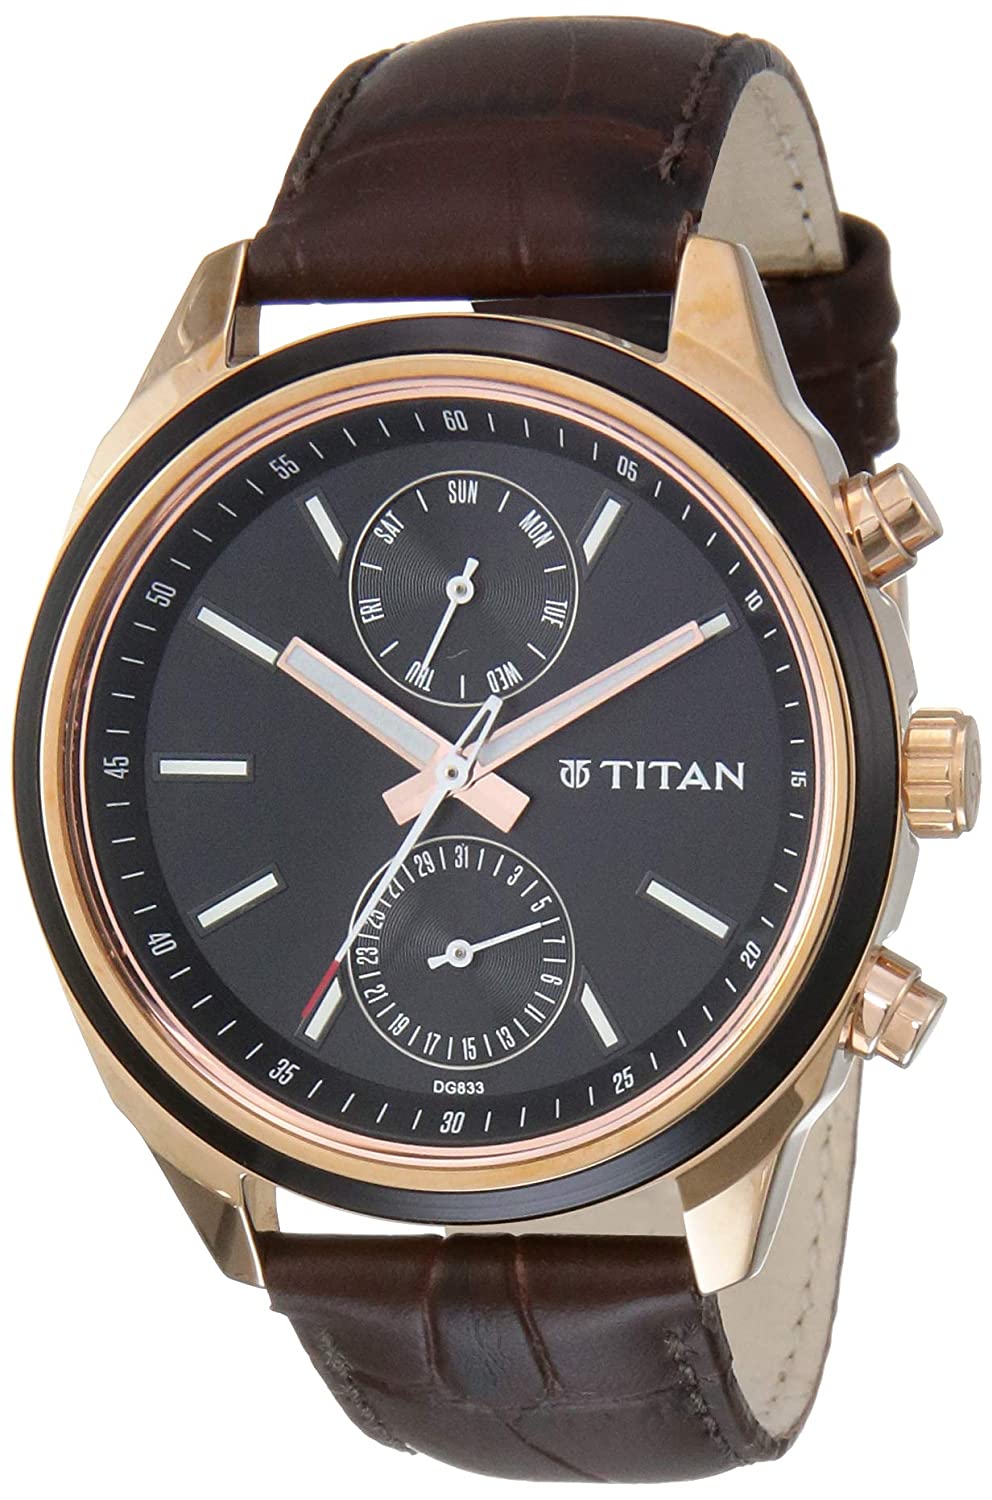 Best Titan watch under 10000